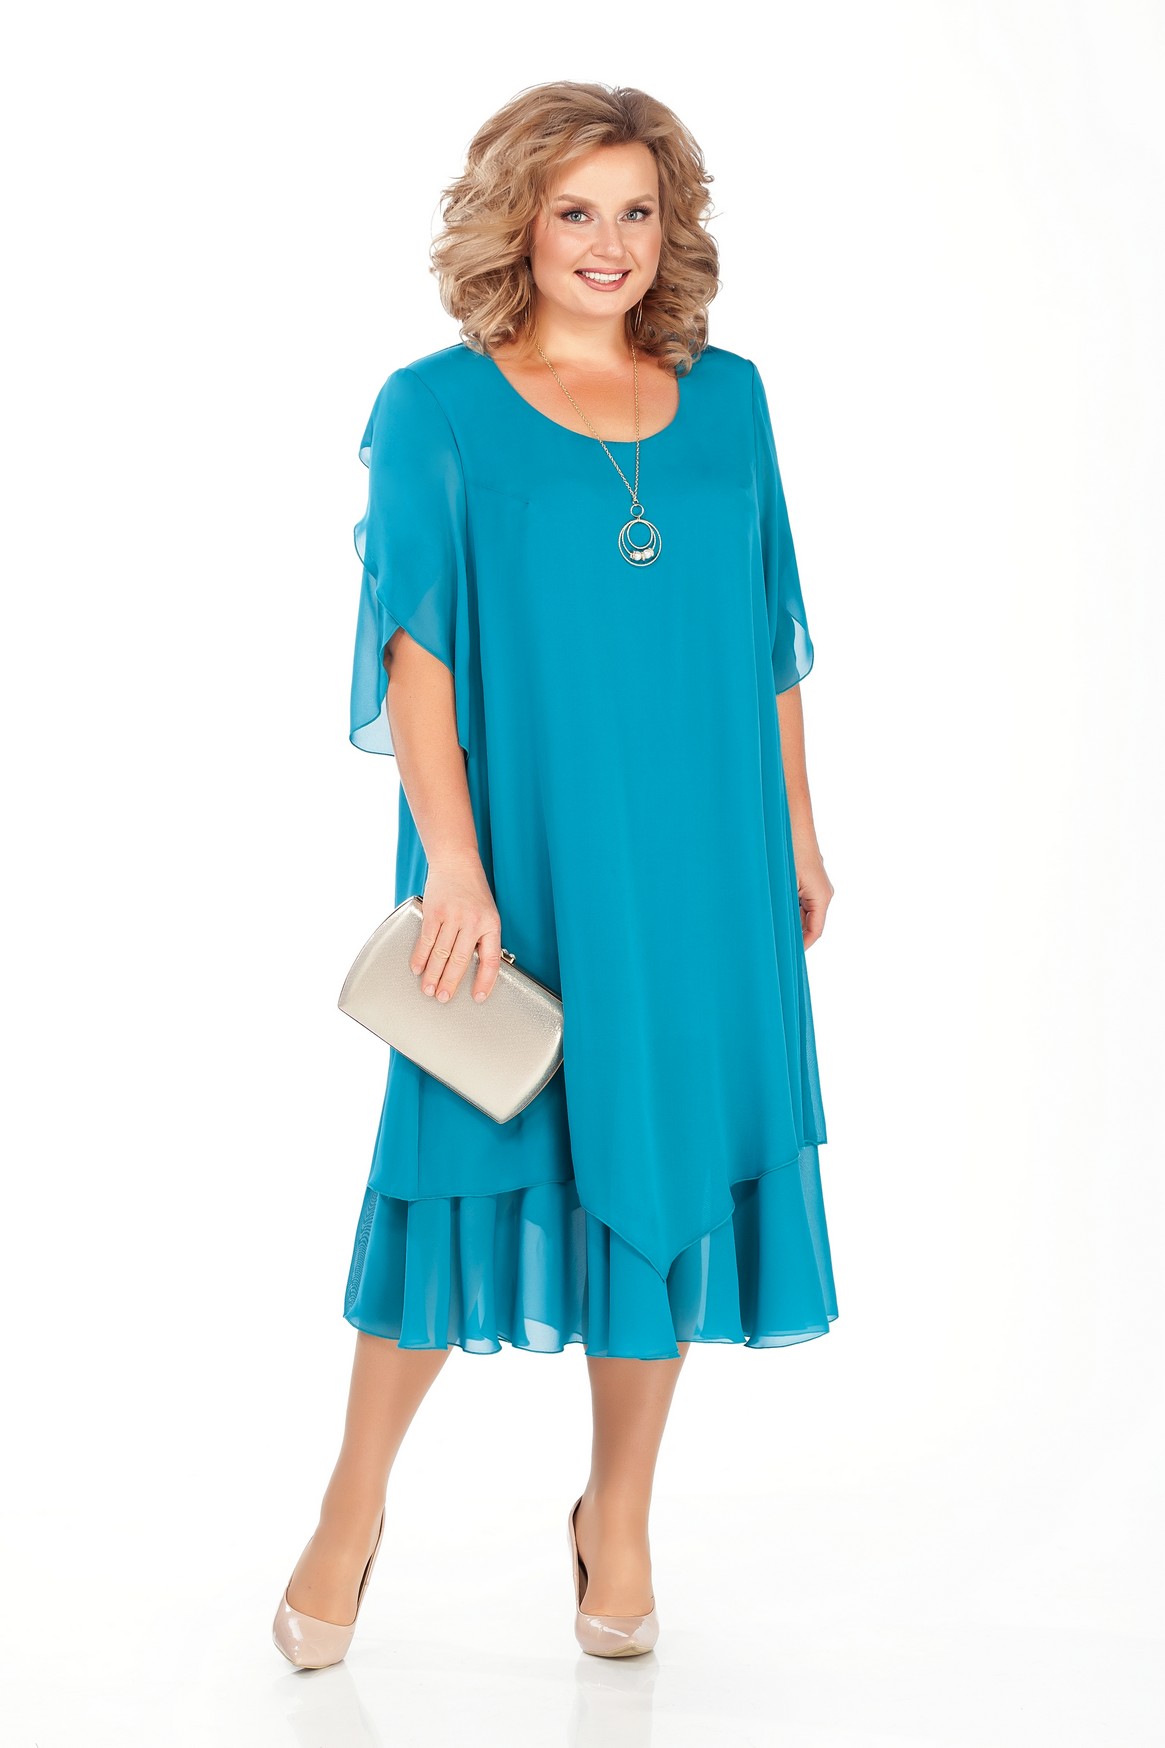 Шифоновое платье на подкладке с коротким рукавом, голубое